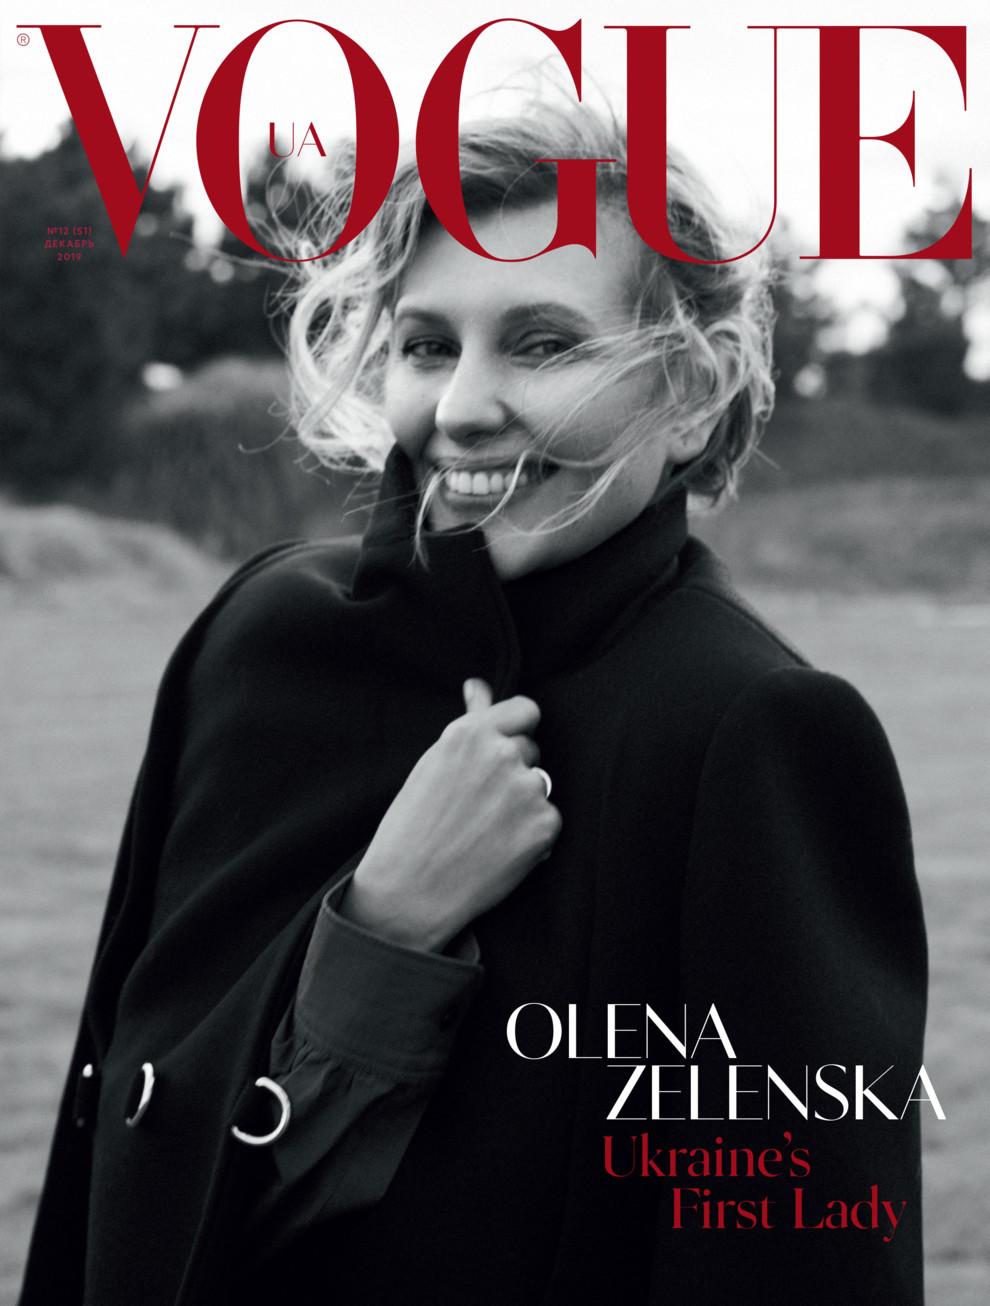 Перша леді України Олена Зеленська з'явилася на обкладинці Vogue